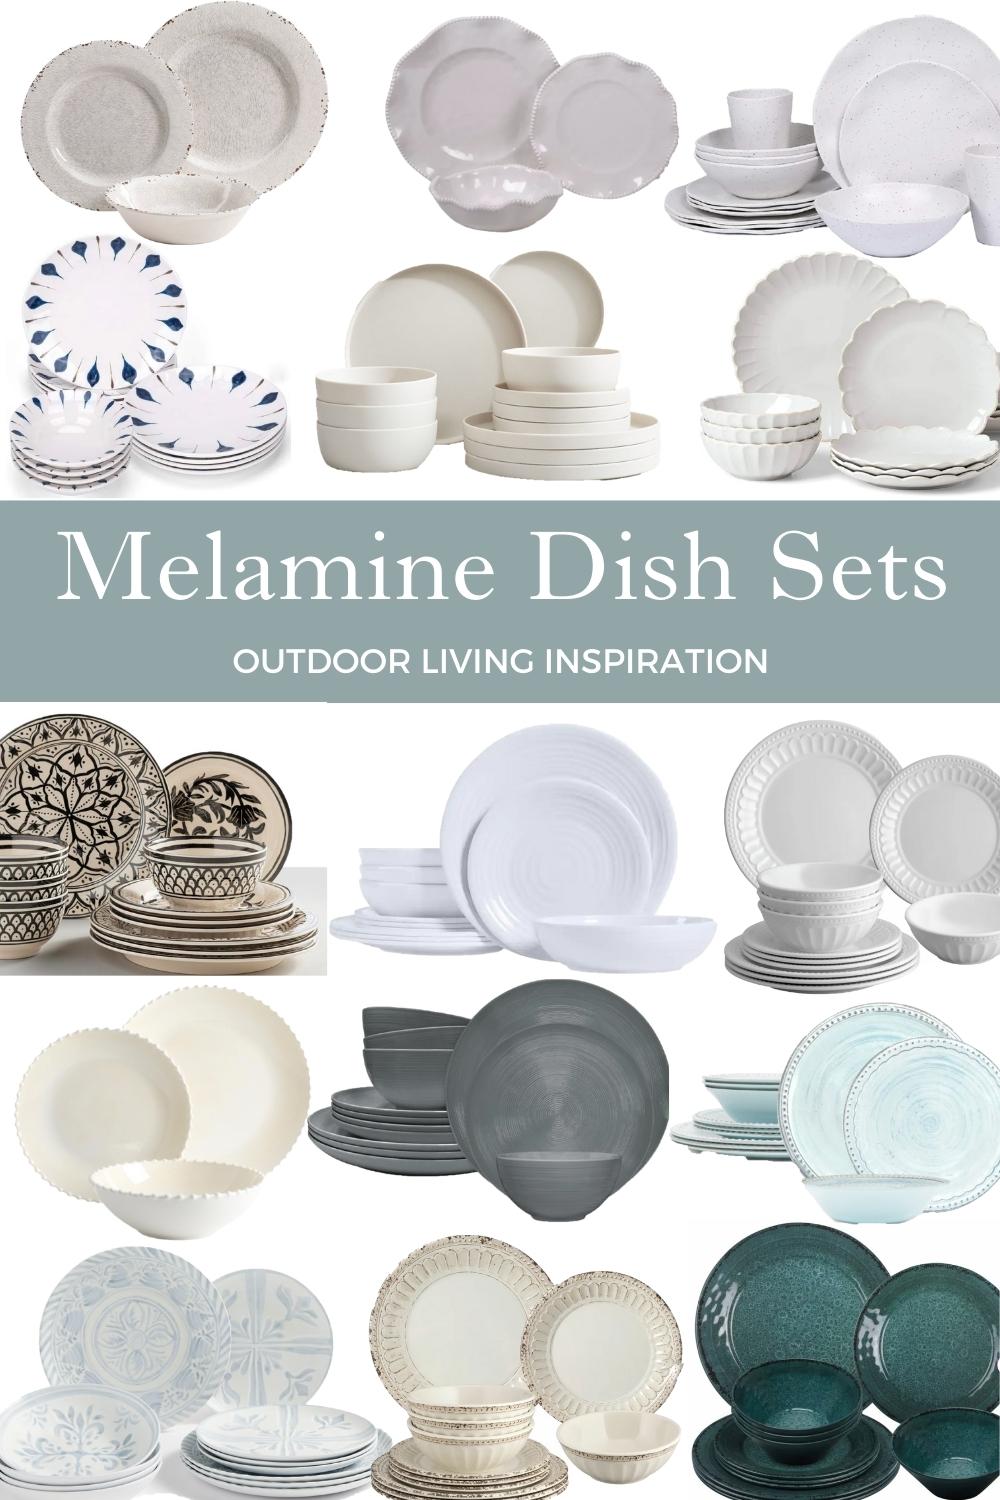 Melamine Dish Sets